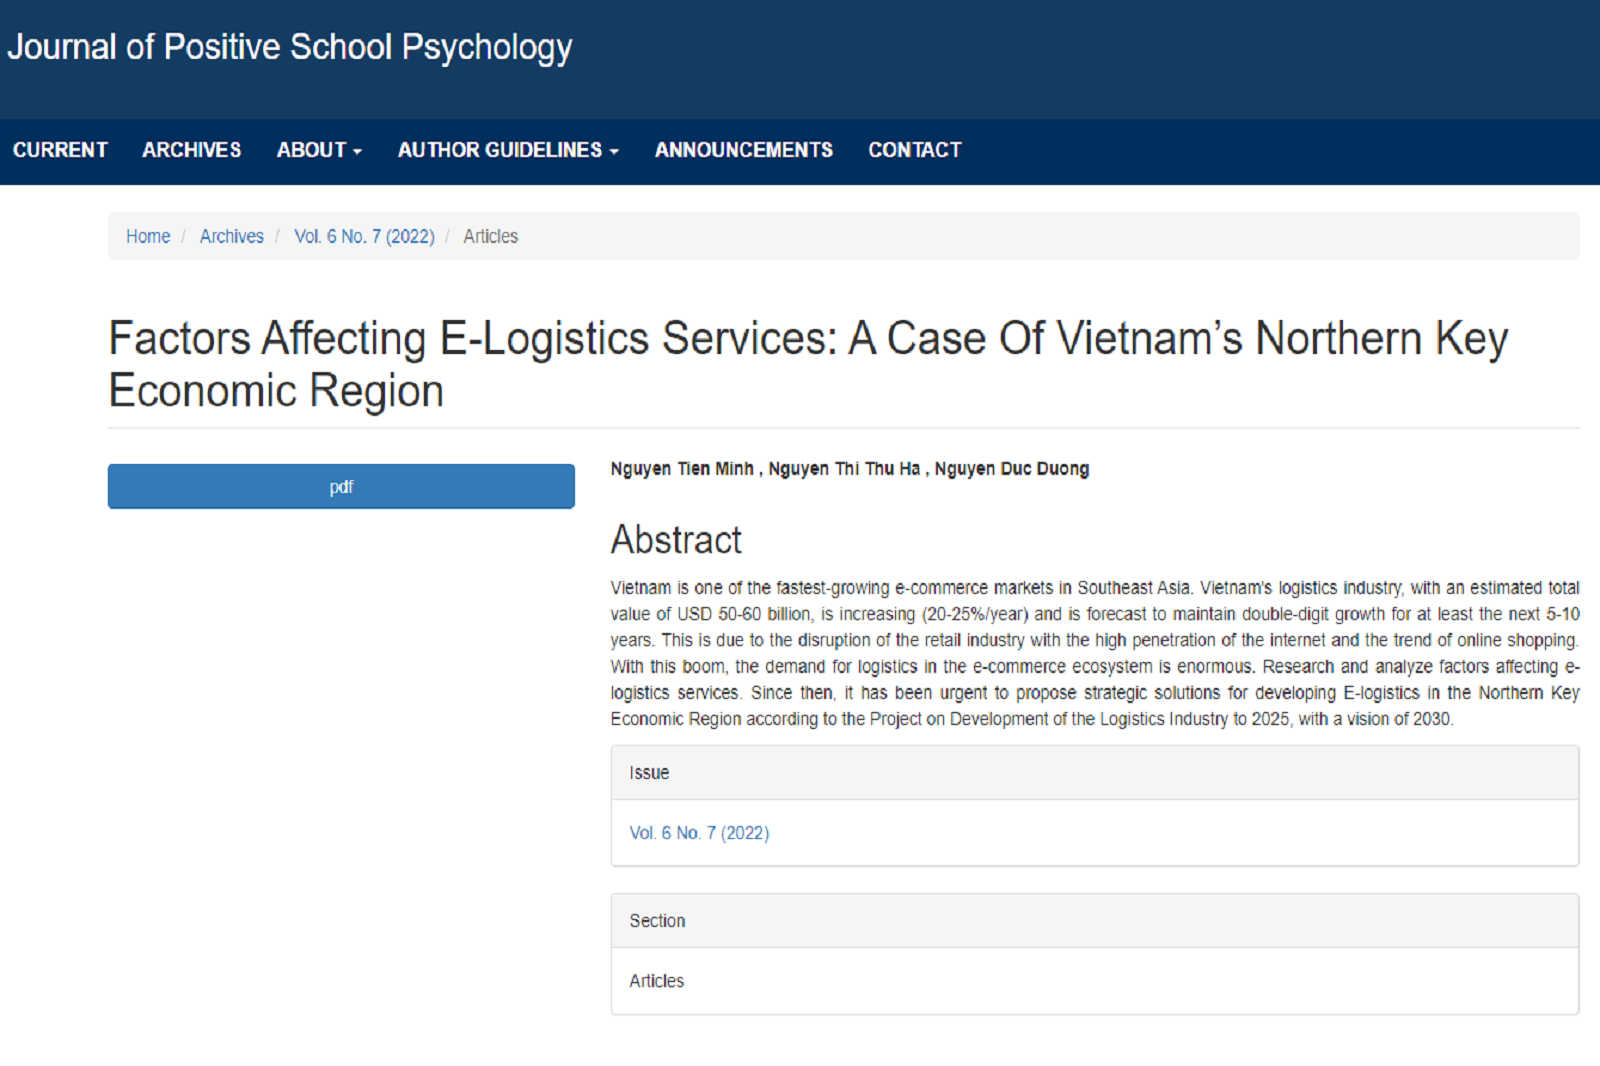 Các yếu tố ảnh hưởng đến dịch vụ e-logistics:  Trường hợp Vùng kinh tế trọng điểm Bắc Bộ của Việt Nam